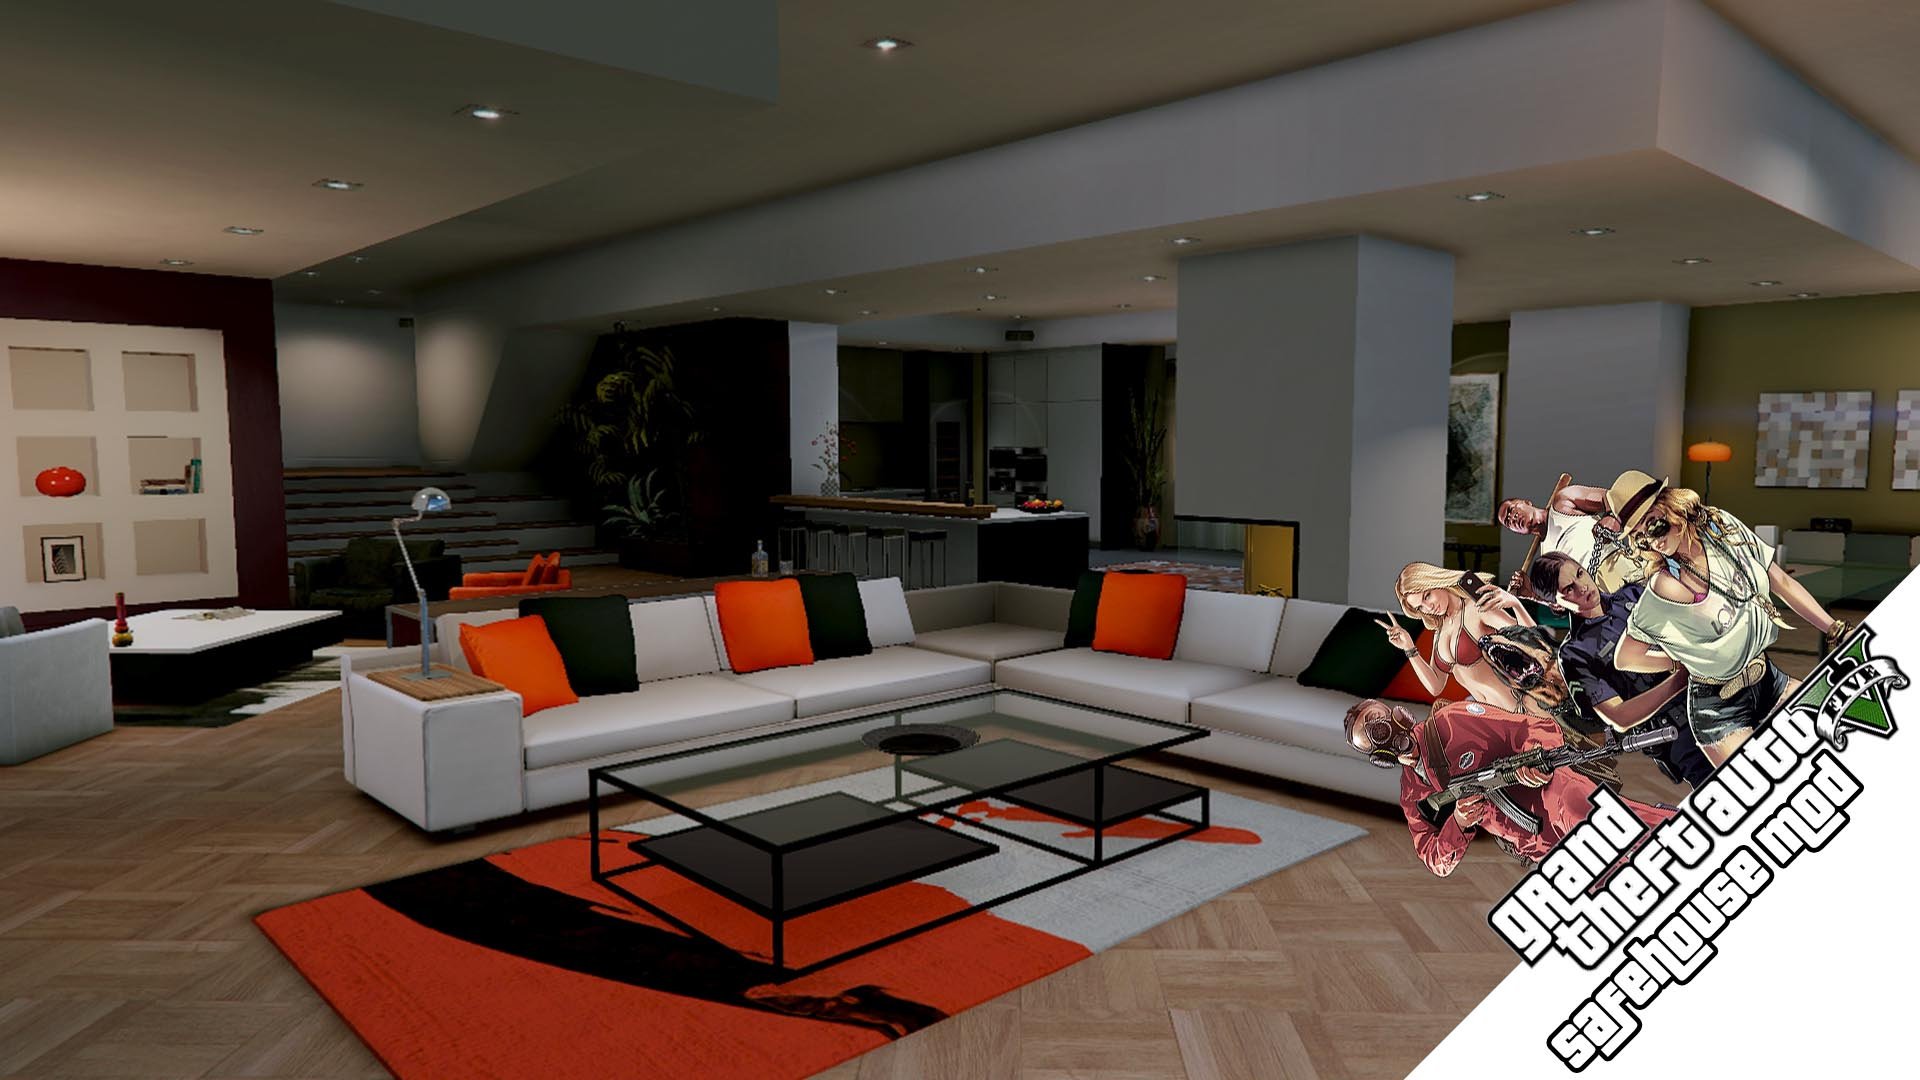 The Savehouse Mod: Houses, Hotels, Custom Savespots [LUA] - GTA5